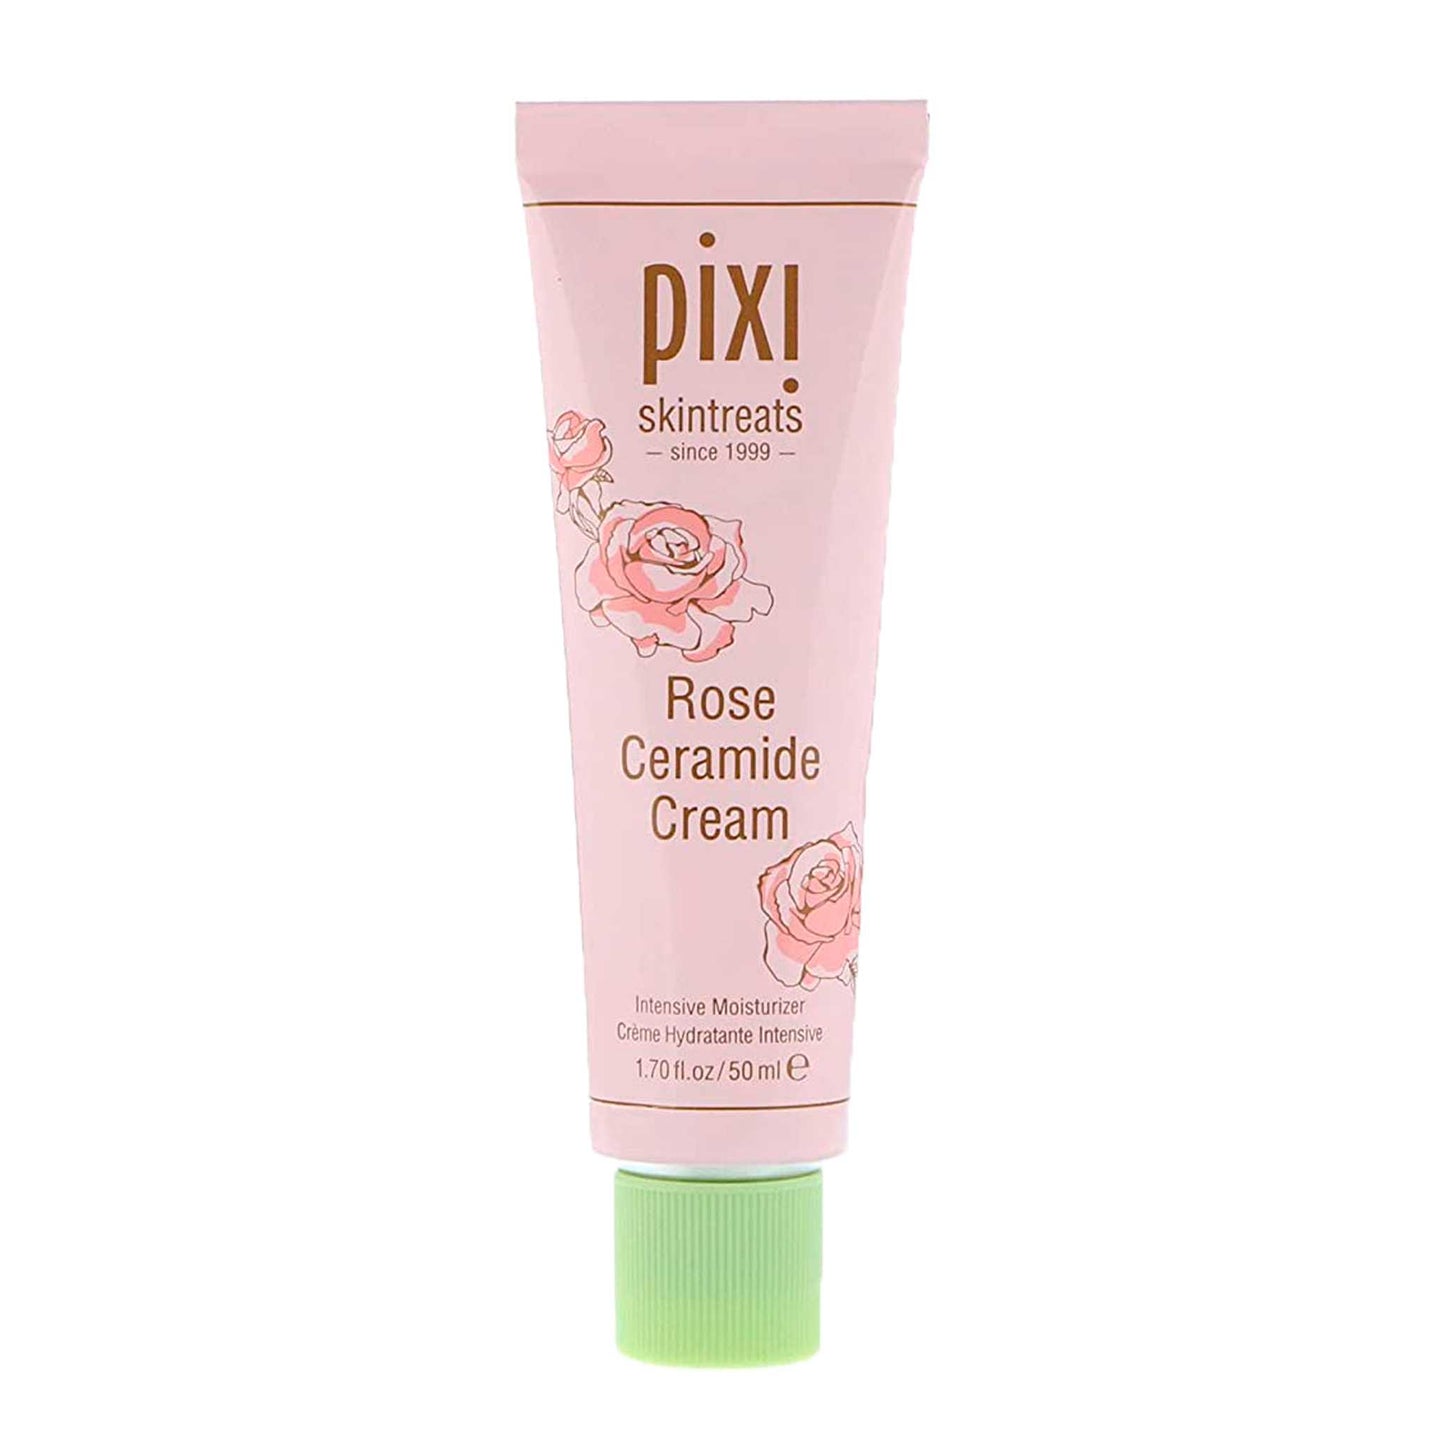 Pixi rose ceramide face cream Pixi